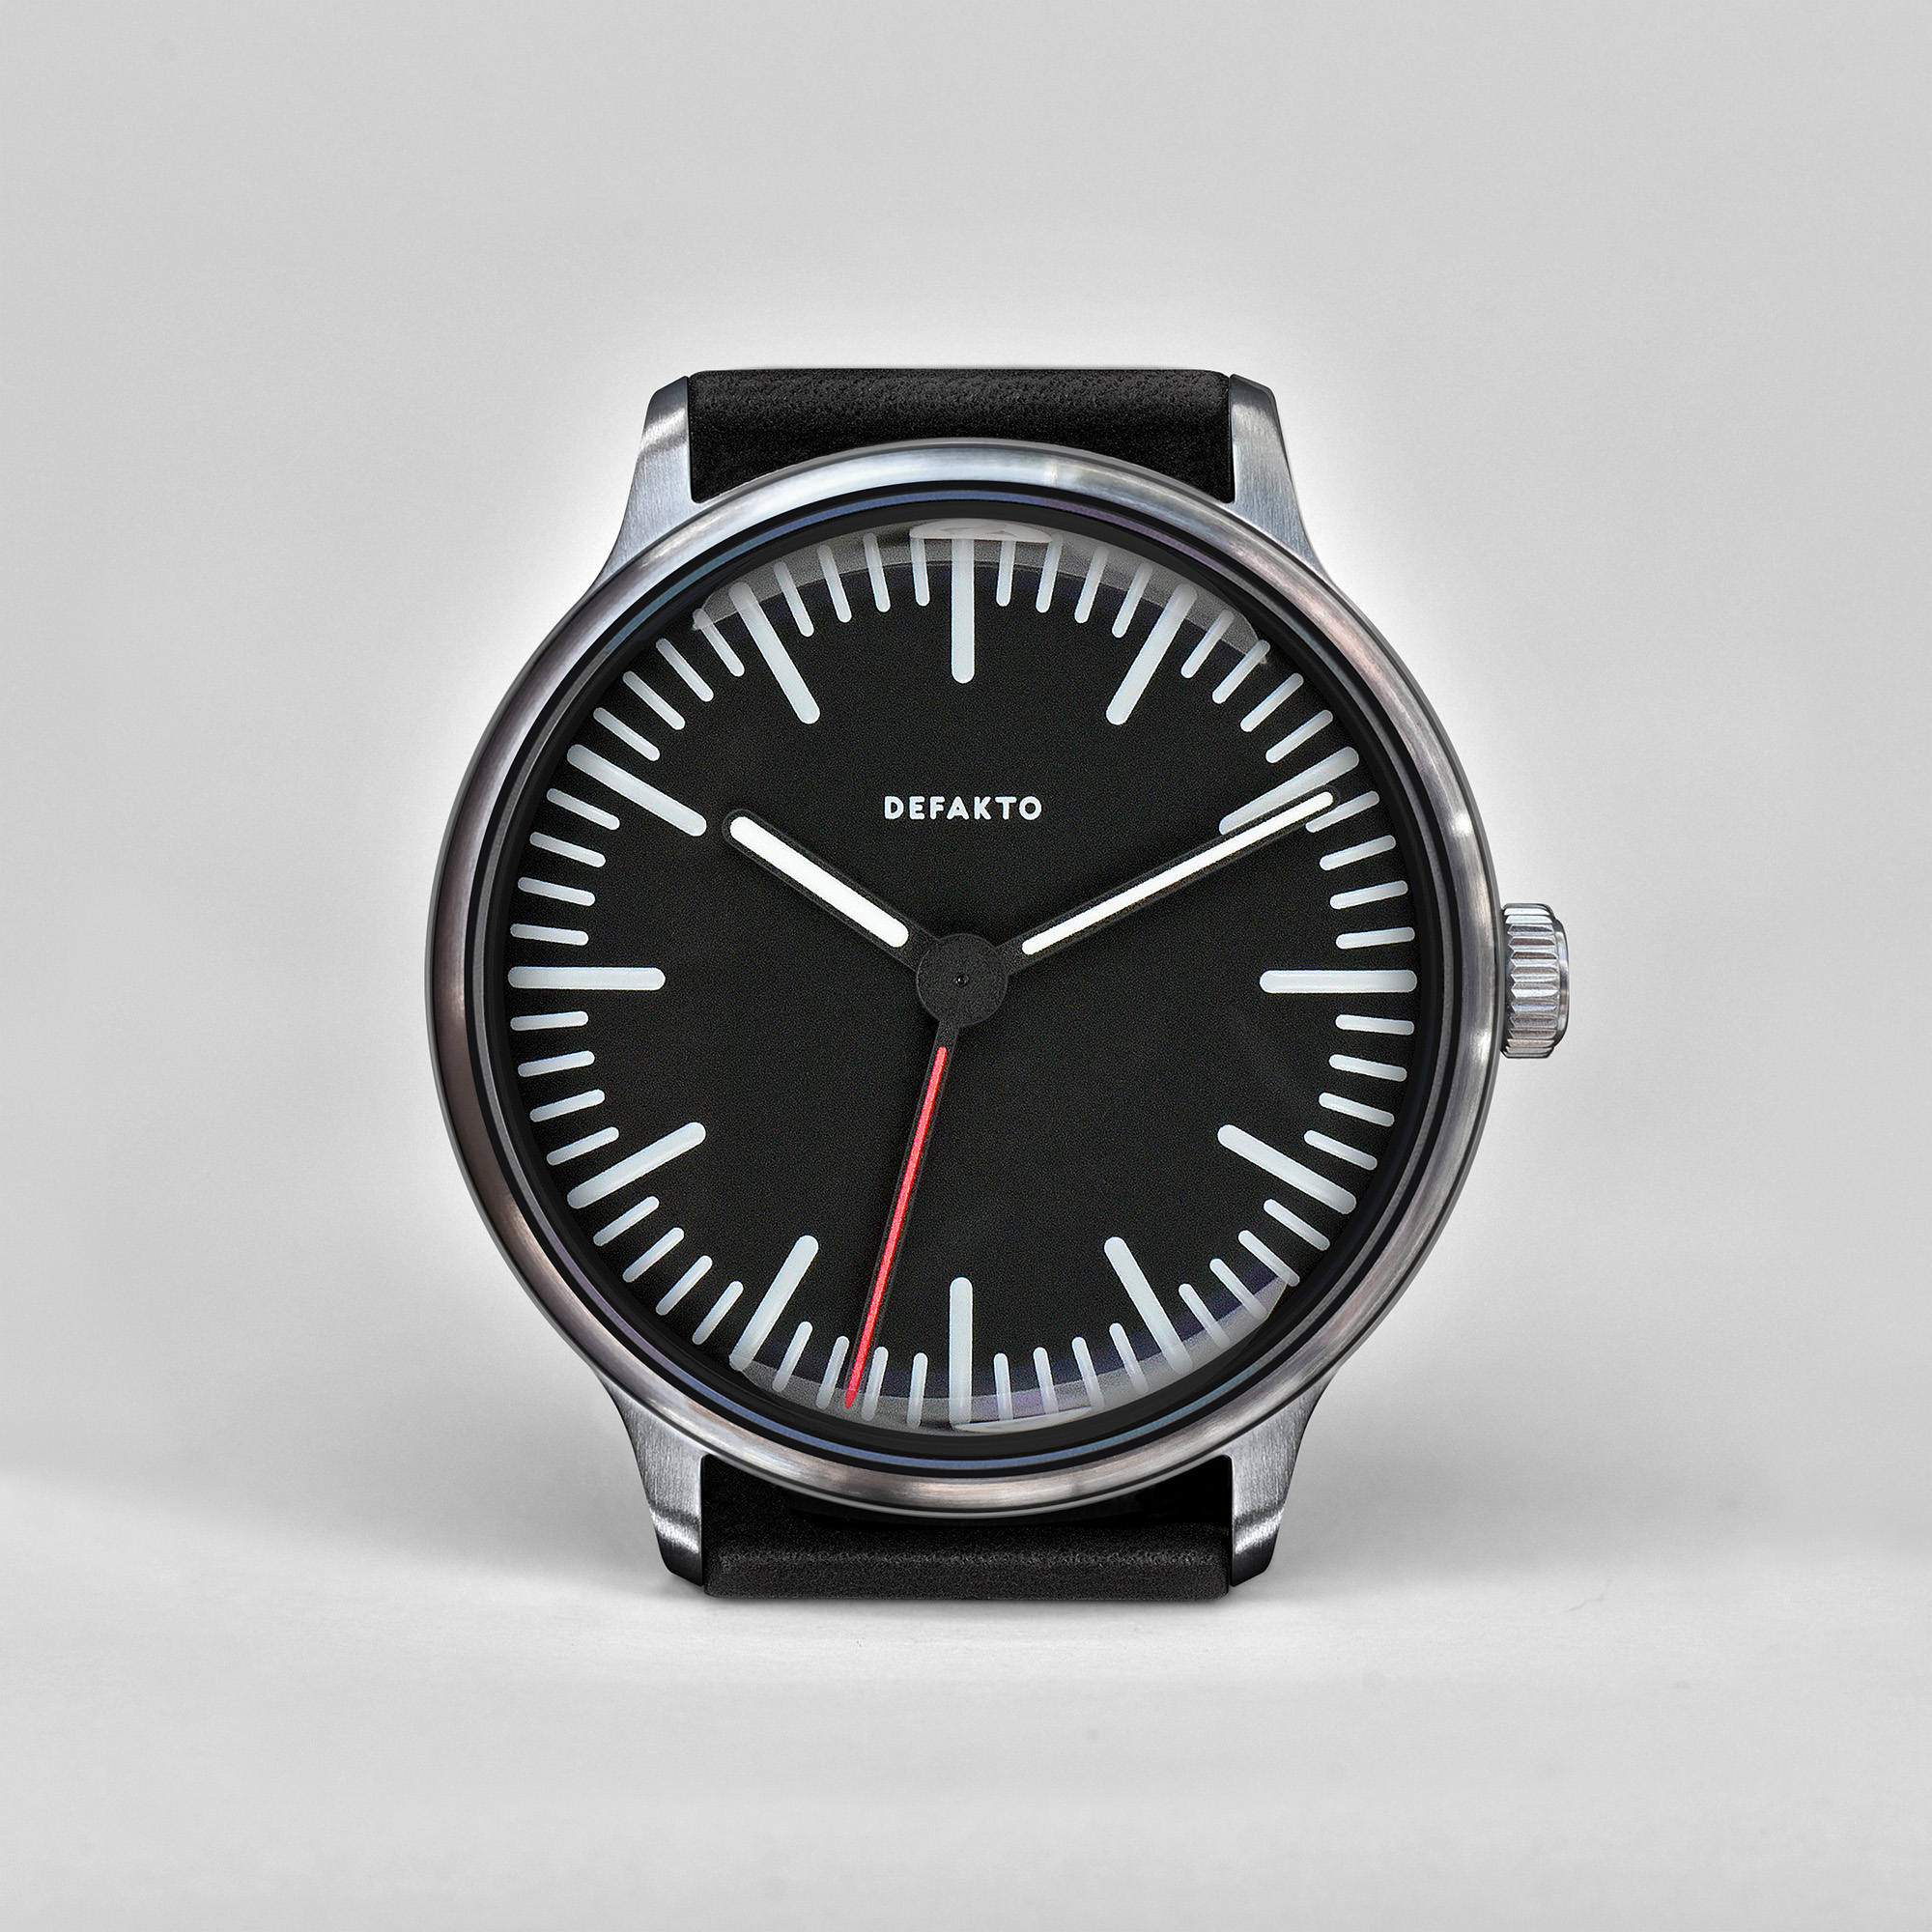 Bauhaus Design Watch Uhr Defakto Transit German Design Award